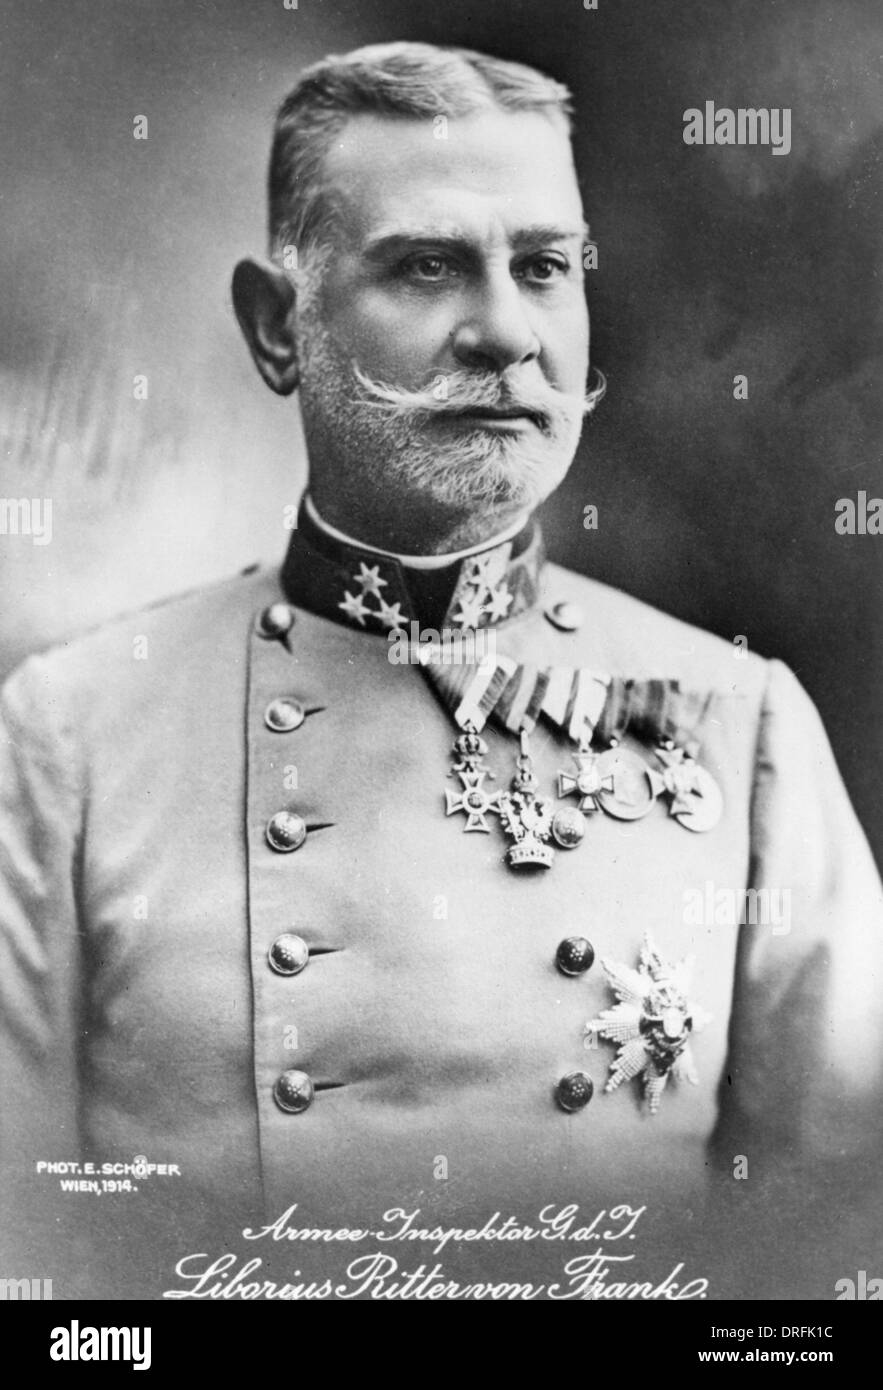 Liborius Ritter von Frank, Austro-Hungarian General Stock Photo